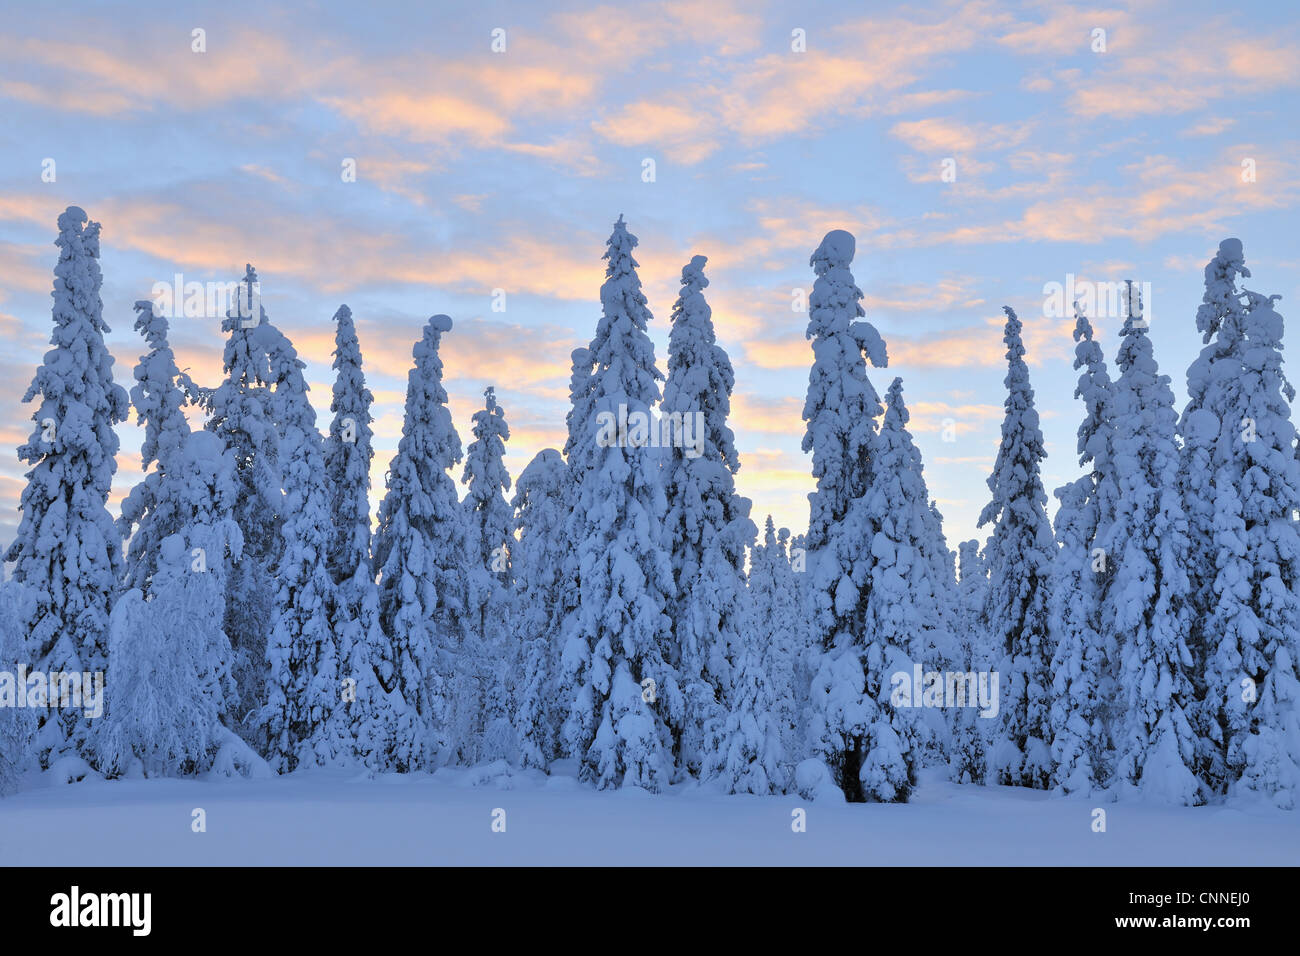 Kuusamo, Northern Ostrobothnia, Oulu Province, Finland Stock Photo